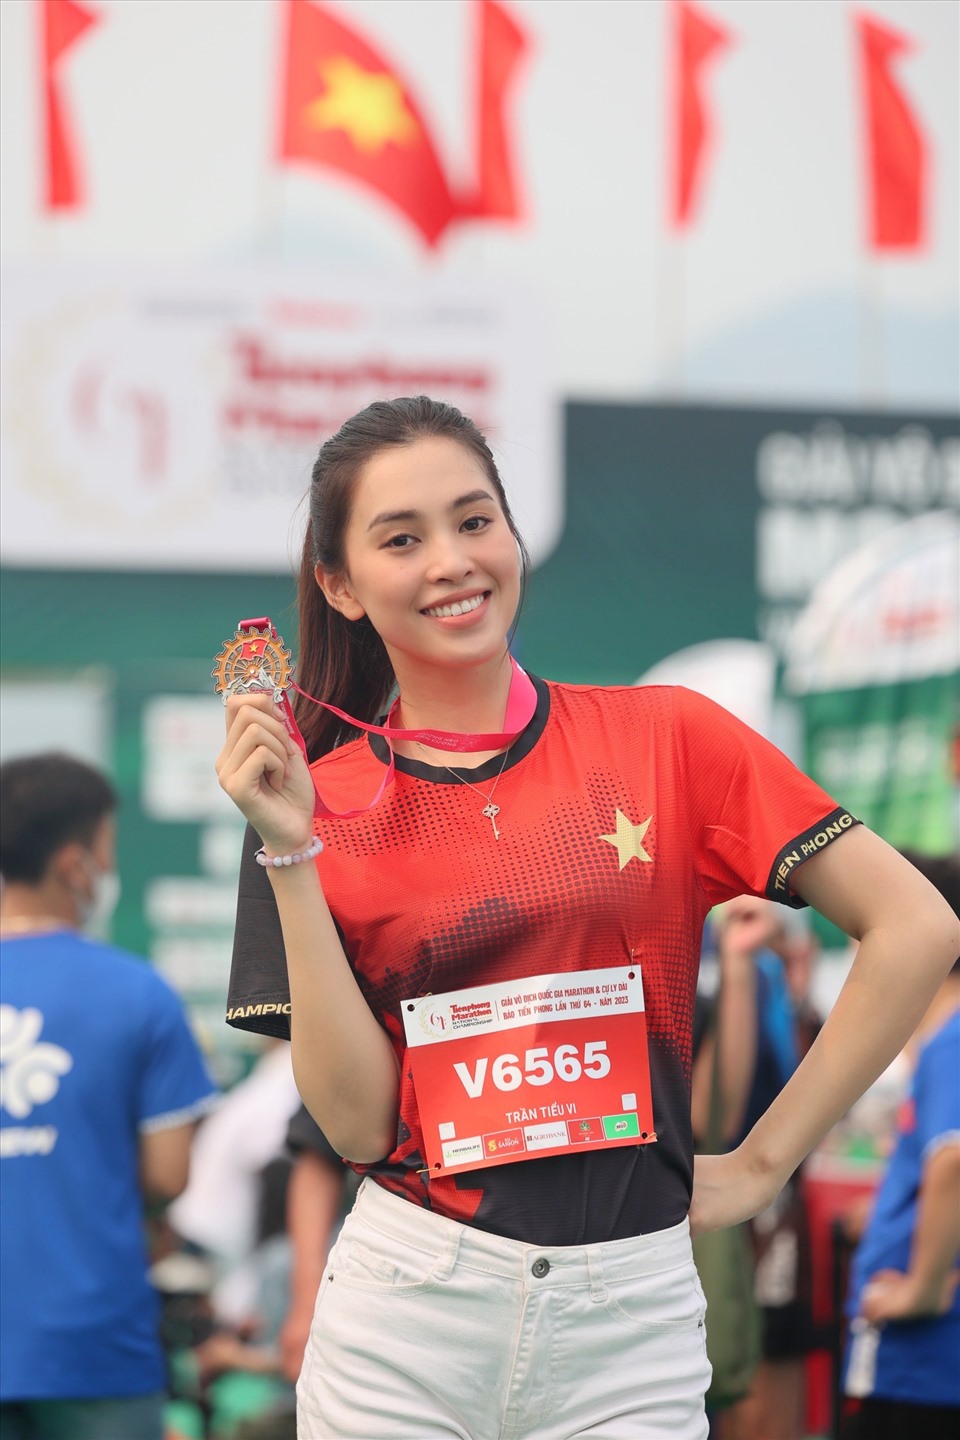 Hoa hậu Tiểu Vy khoe nhan sắc xinh đẹp với tấm huy chương giải chạy. Ảnh: Nhân vật cung cấp